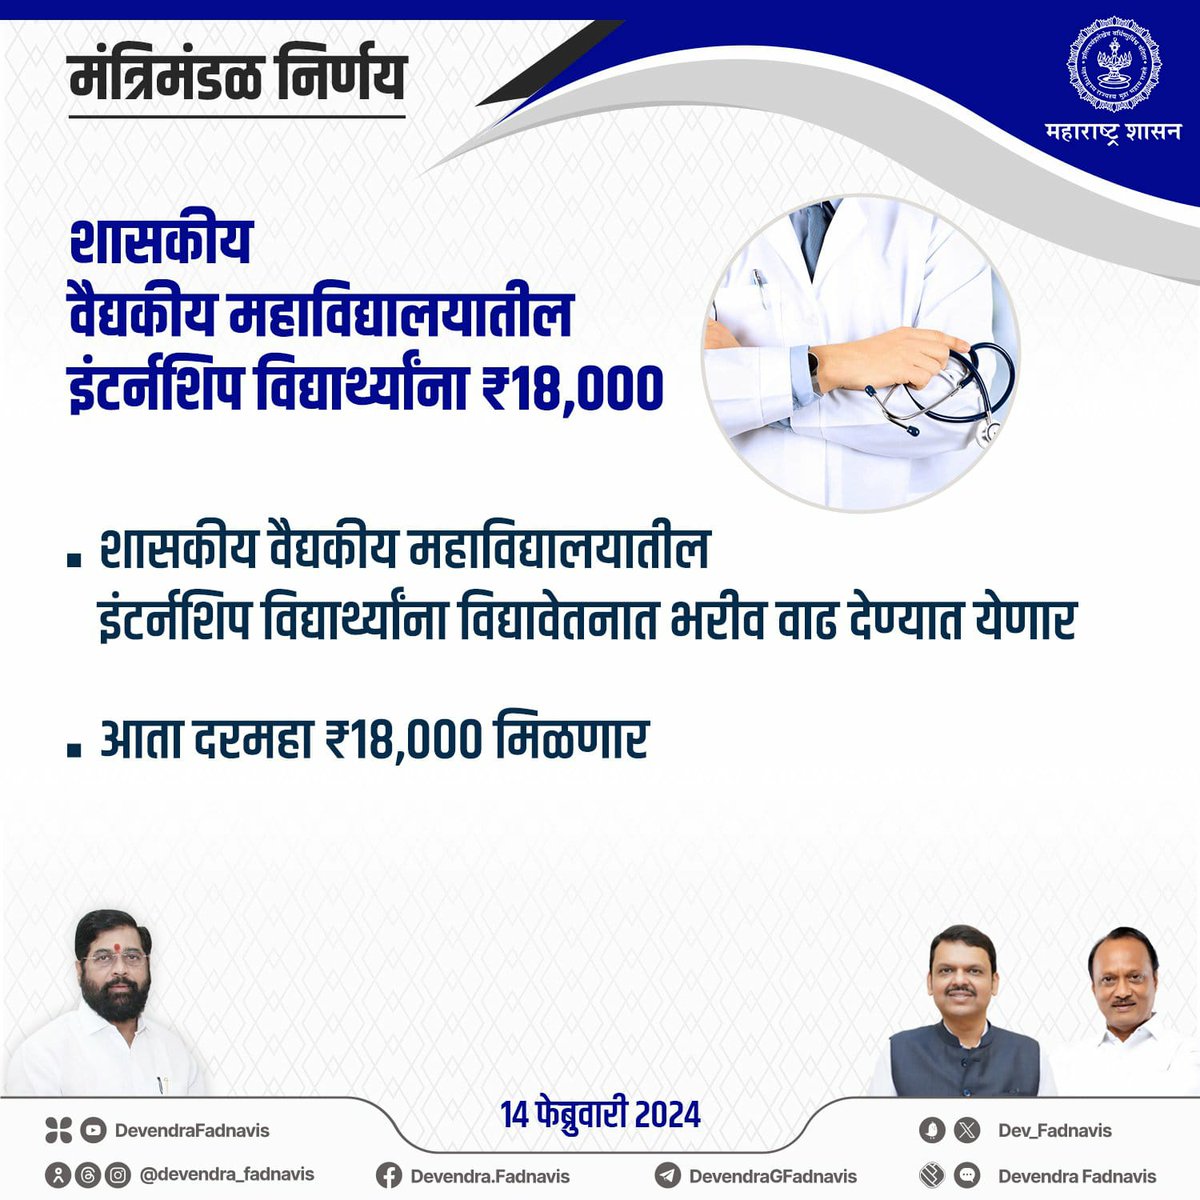 शासकीय वैद्यकीय महाविद्यालयातील
इंटर्नशिप विद्यार्थ्यांना ₹18,000

#मंत्रिमंडळनिर्णय #Maharashtra #CabinetDecision #MaharashtraCabinet #MedicalCollege